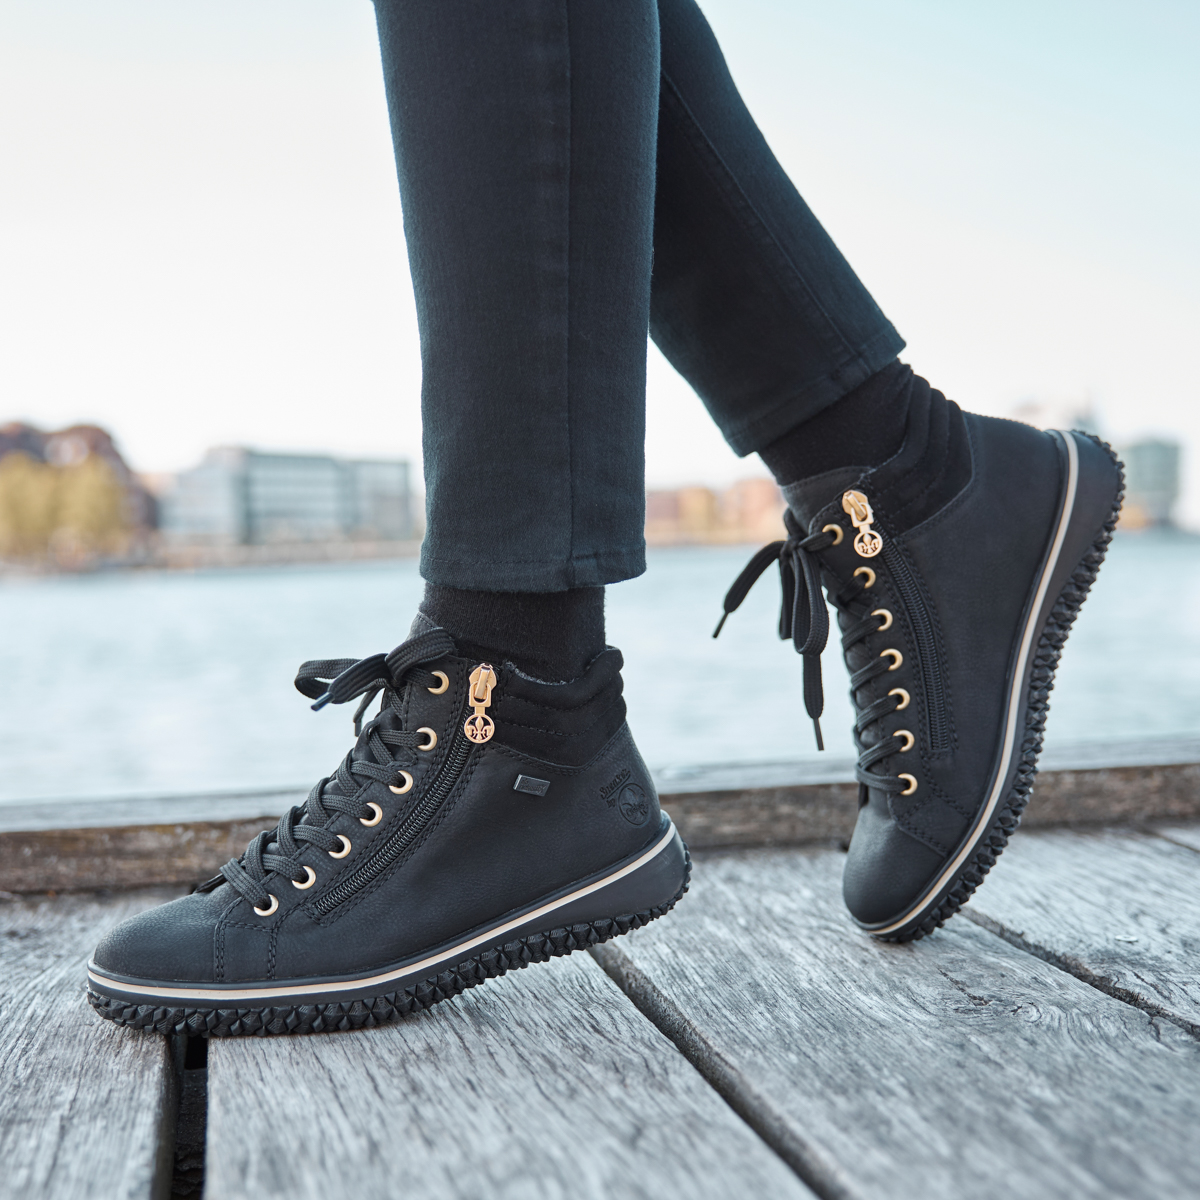 Almindelig sammensværgelse brud Rieker - Water Resistant Ankle Boots Black - Z4263-00, The Shoe Horn